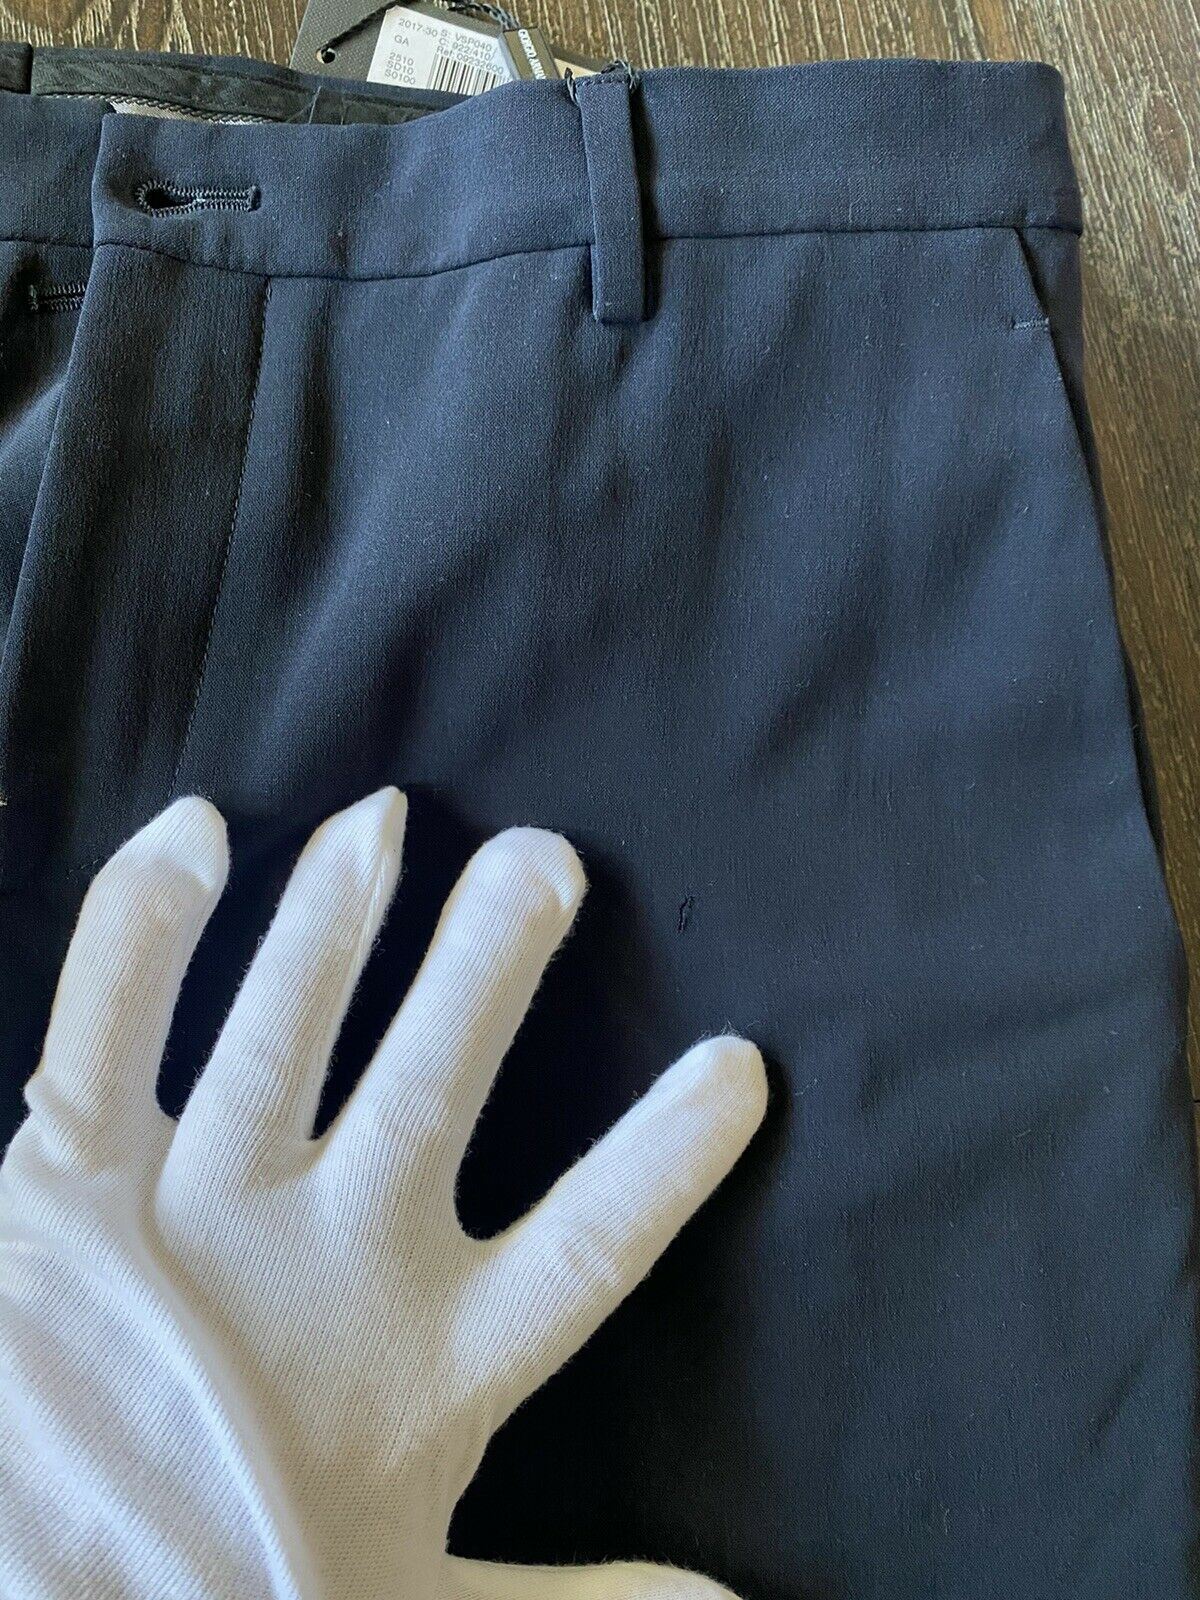 СЗТ $975 Мужские шерстяные классические брюки Giorgio Armani, размер 38, США VSP040 — мелкий крой